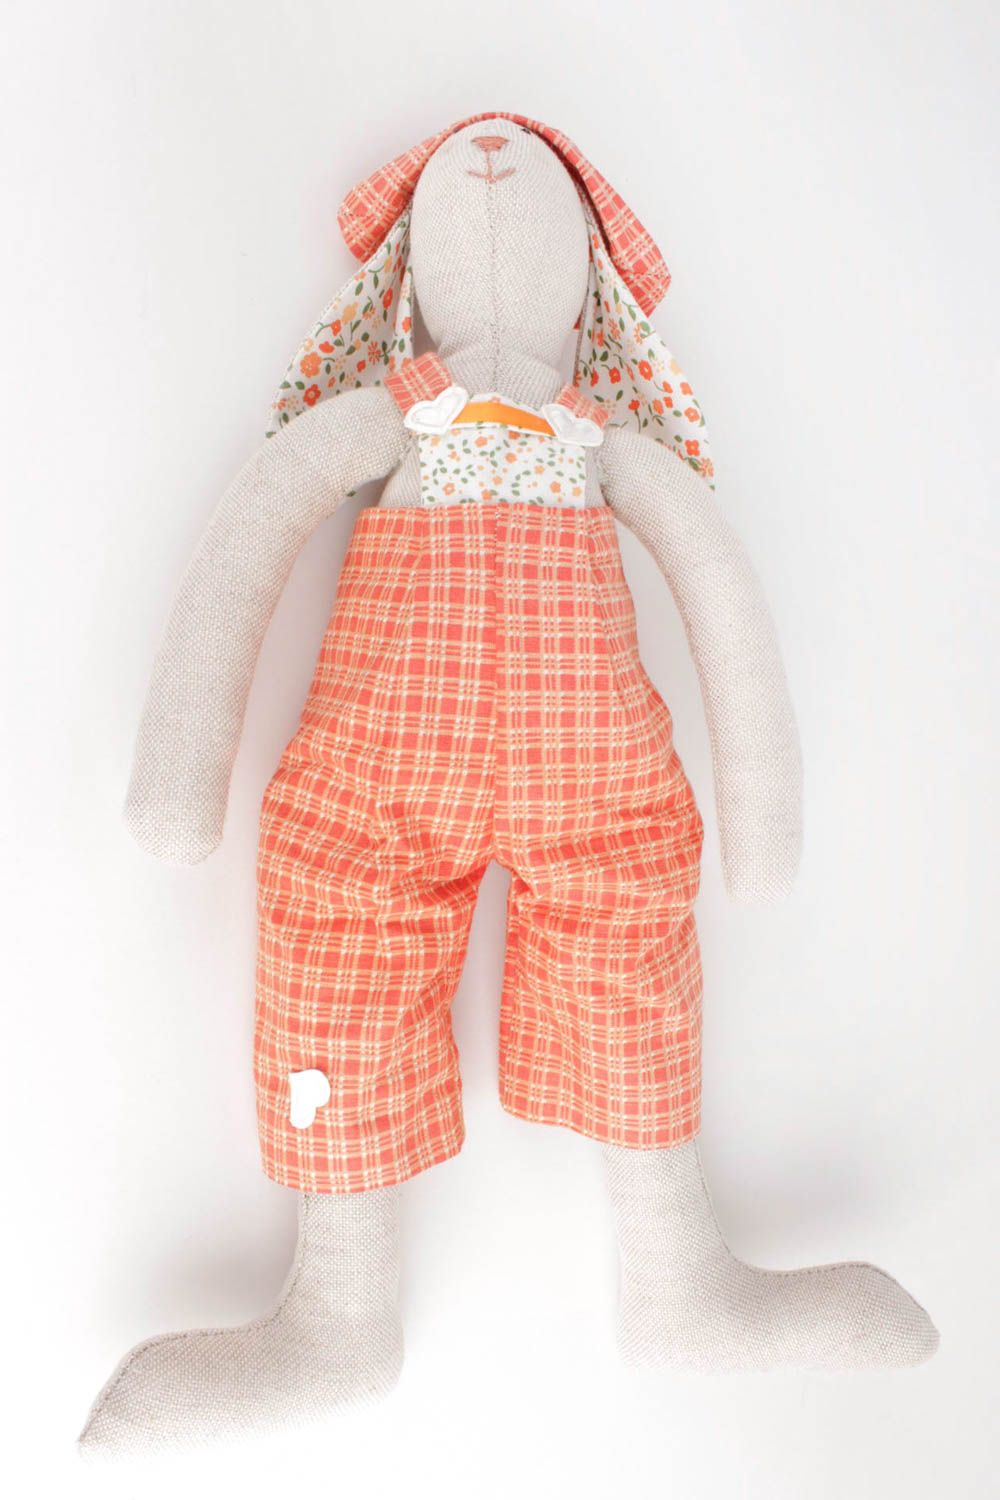 Kuscheltier Hase handgemacht Geschenk für Kinder Haus Deko schön groß dekorativ foto 3